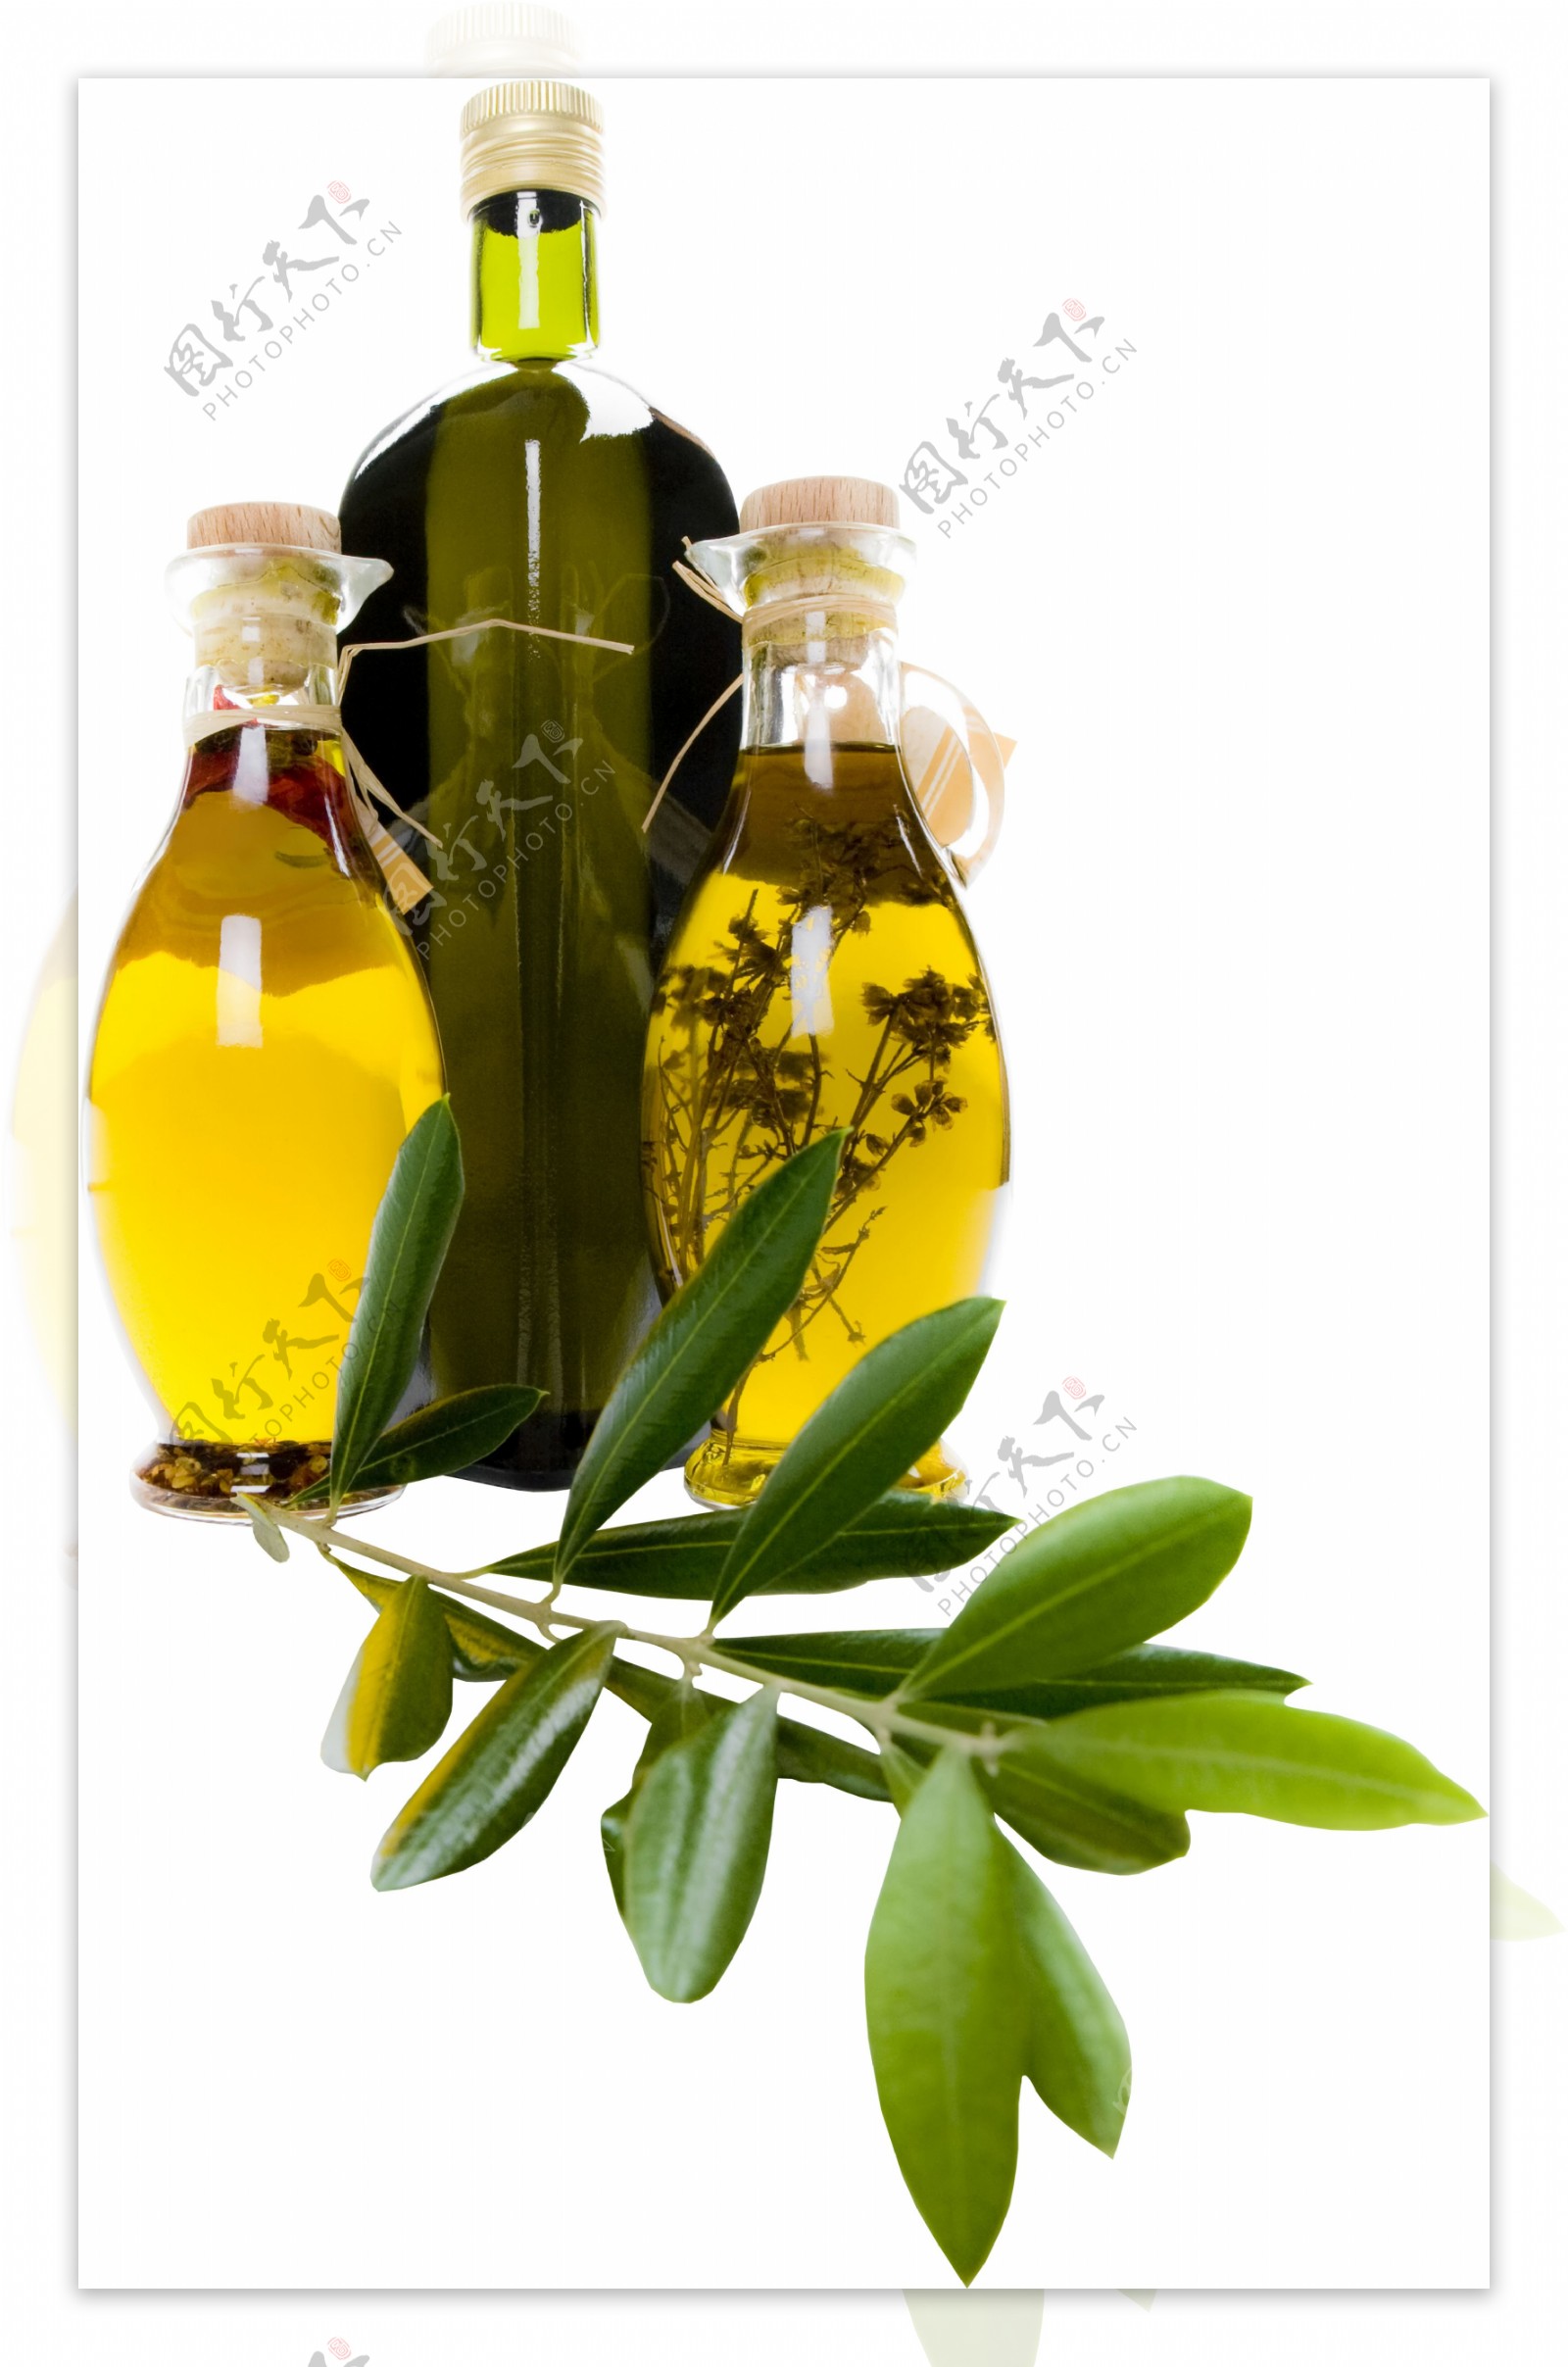 油瓶和树叶图片